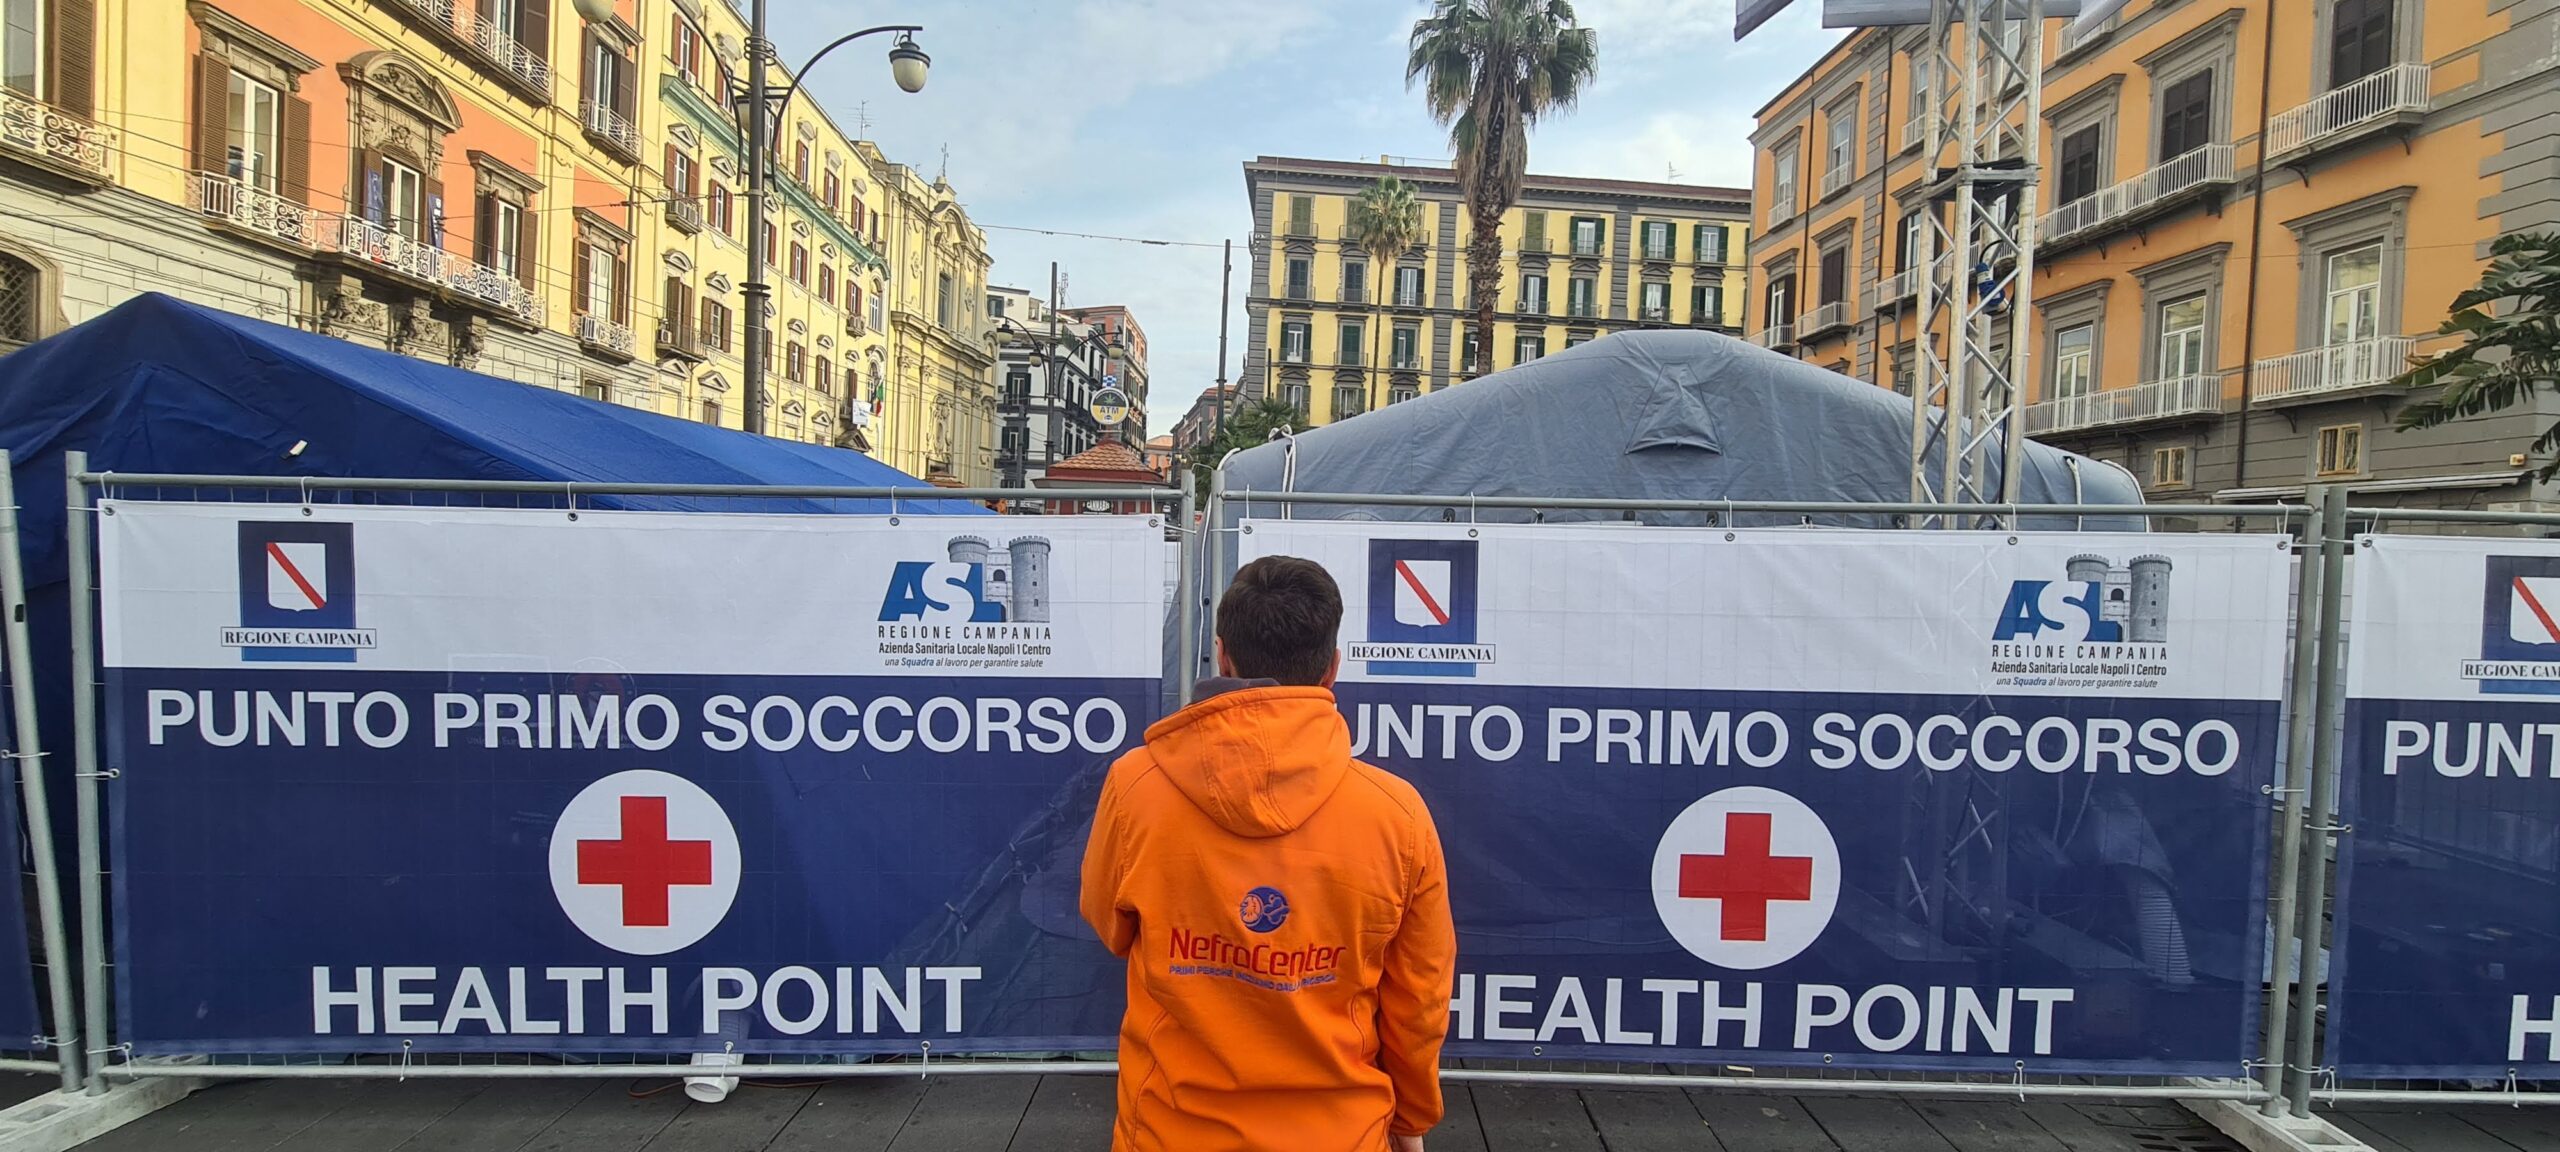 festa scudetto napoli health point nefrocenter